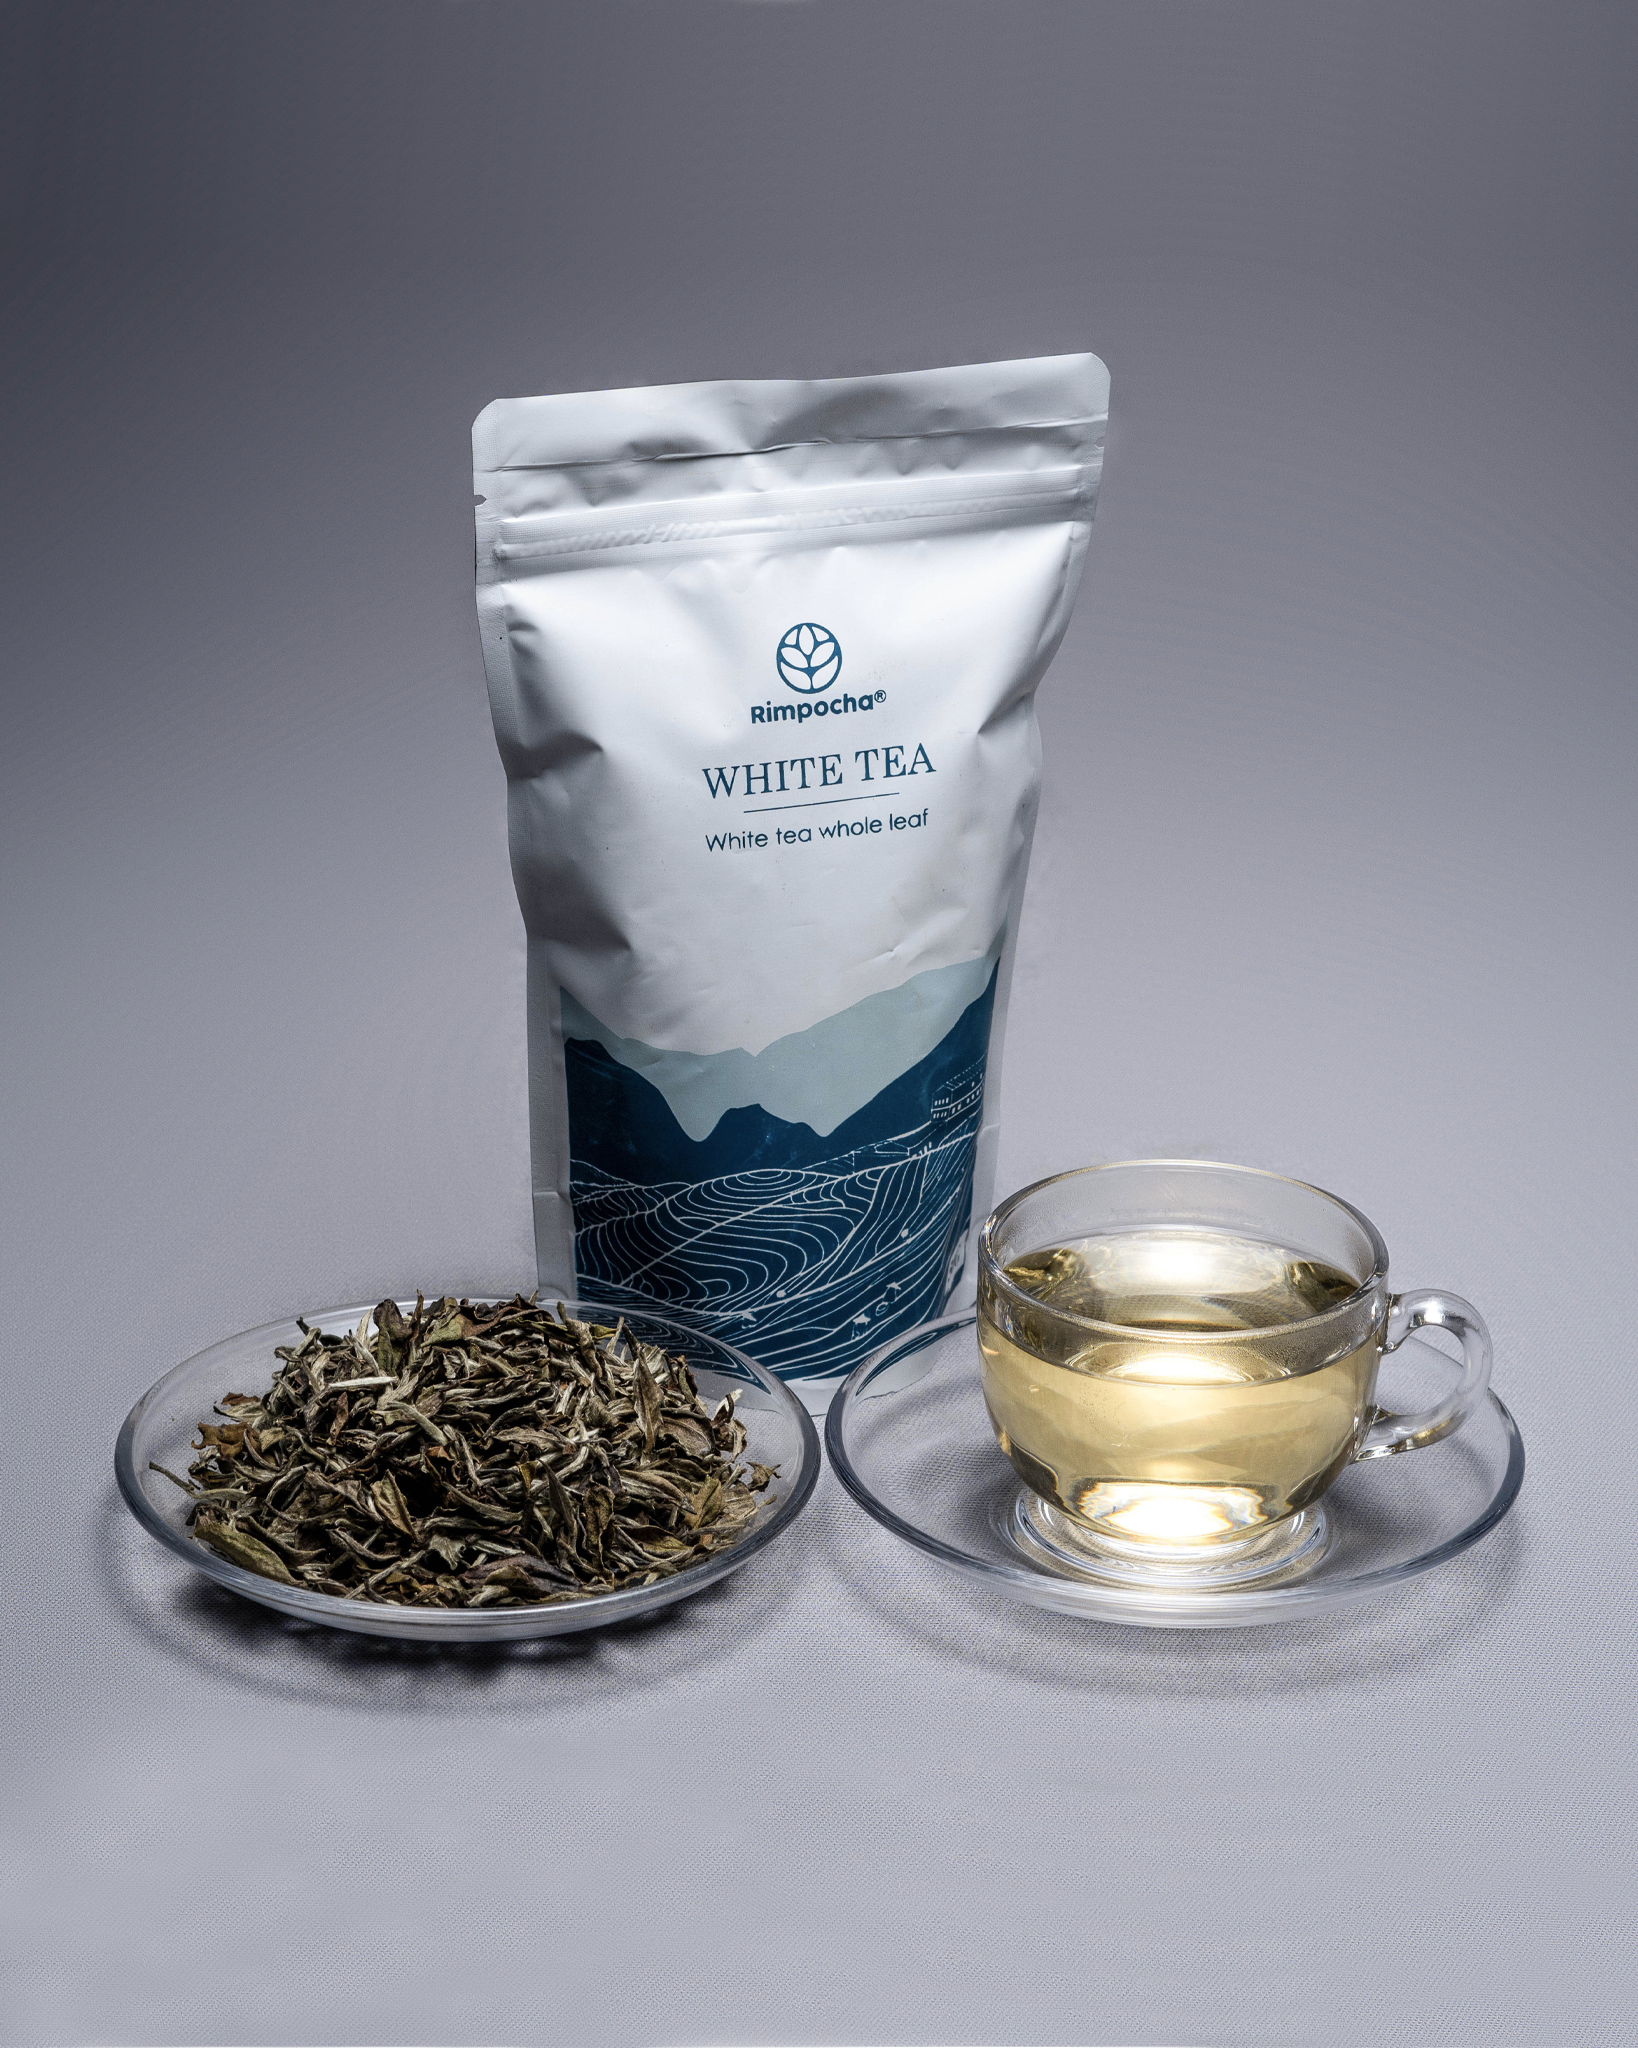 White Tea - The anti-ageing rejuvenator